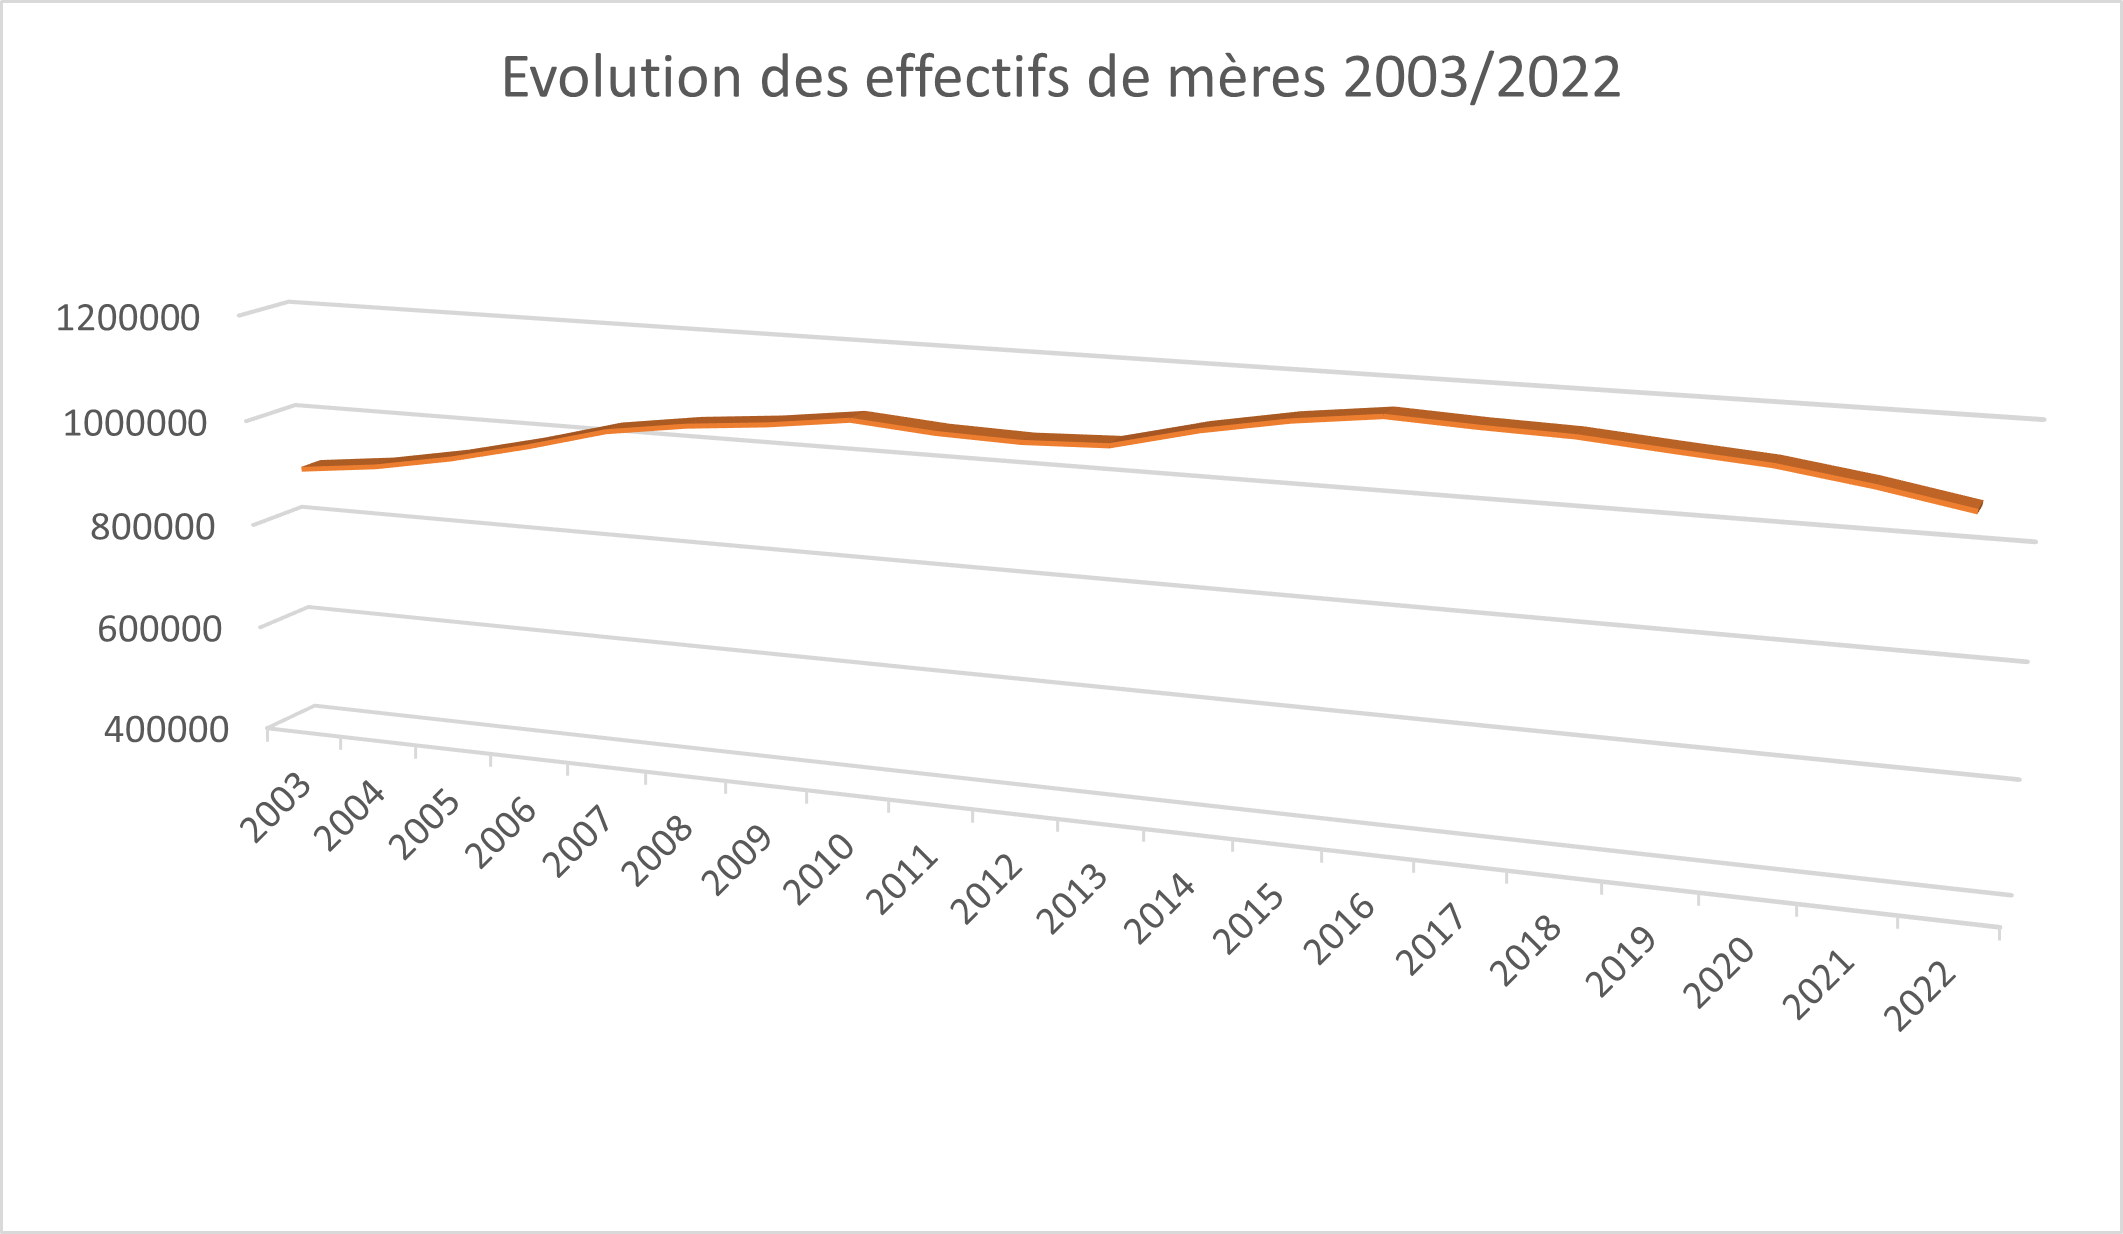 Courbes de présentation du nombre de vaches Limousines entre 2003 et 2022